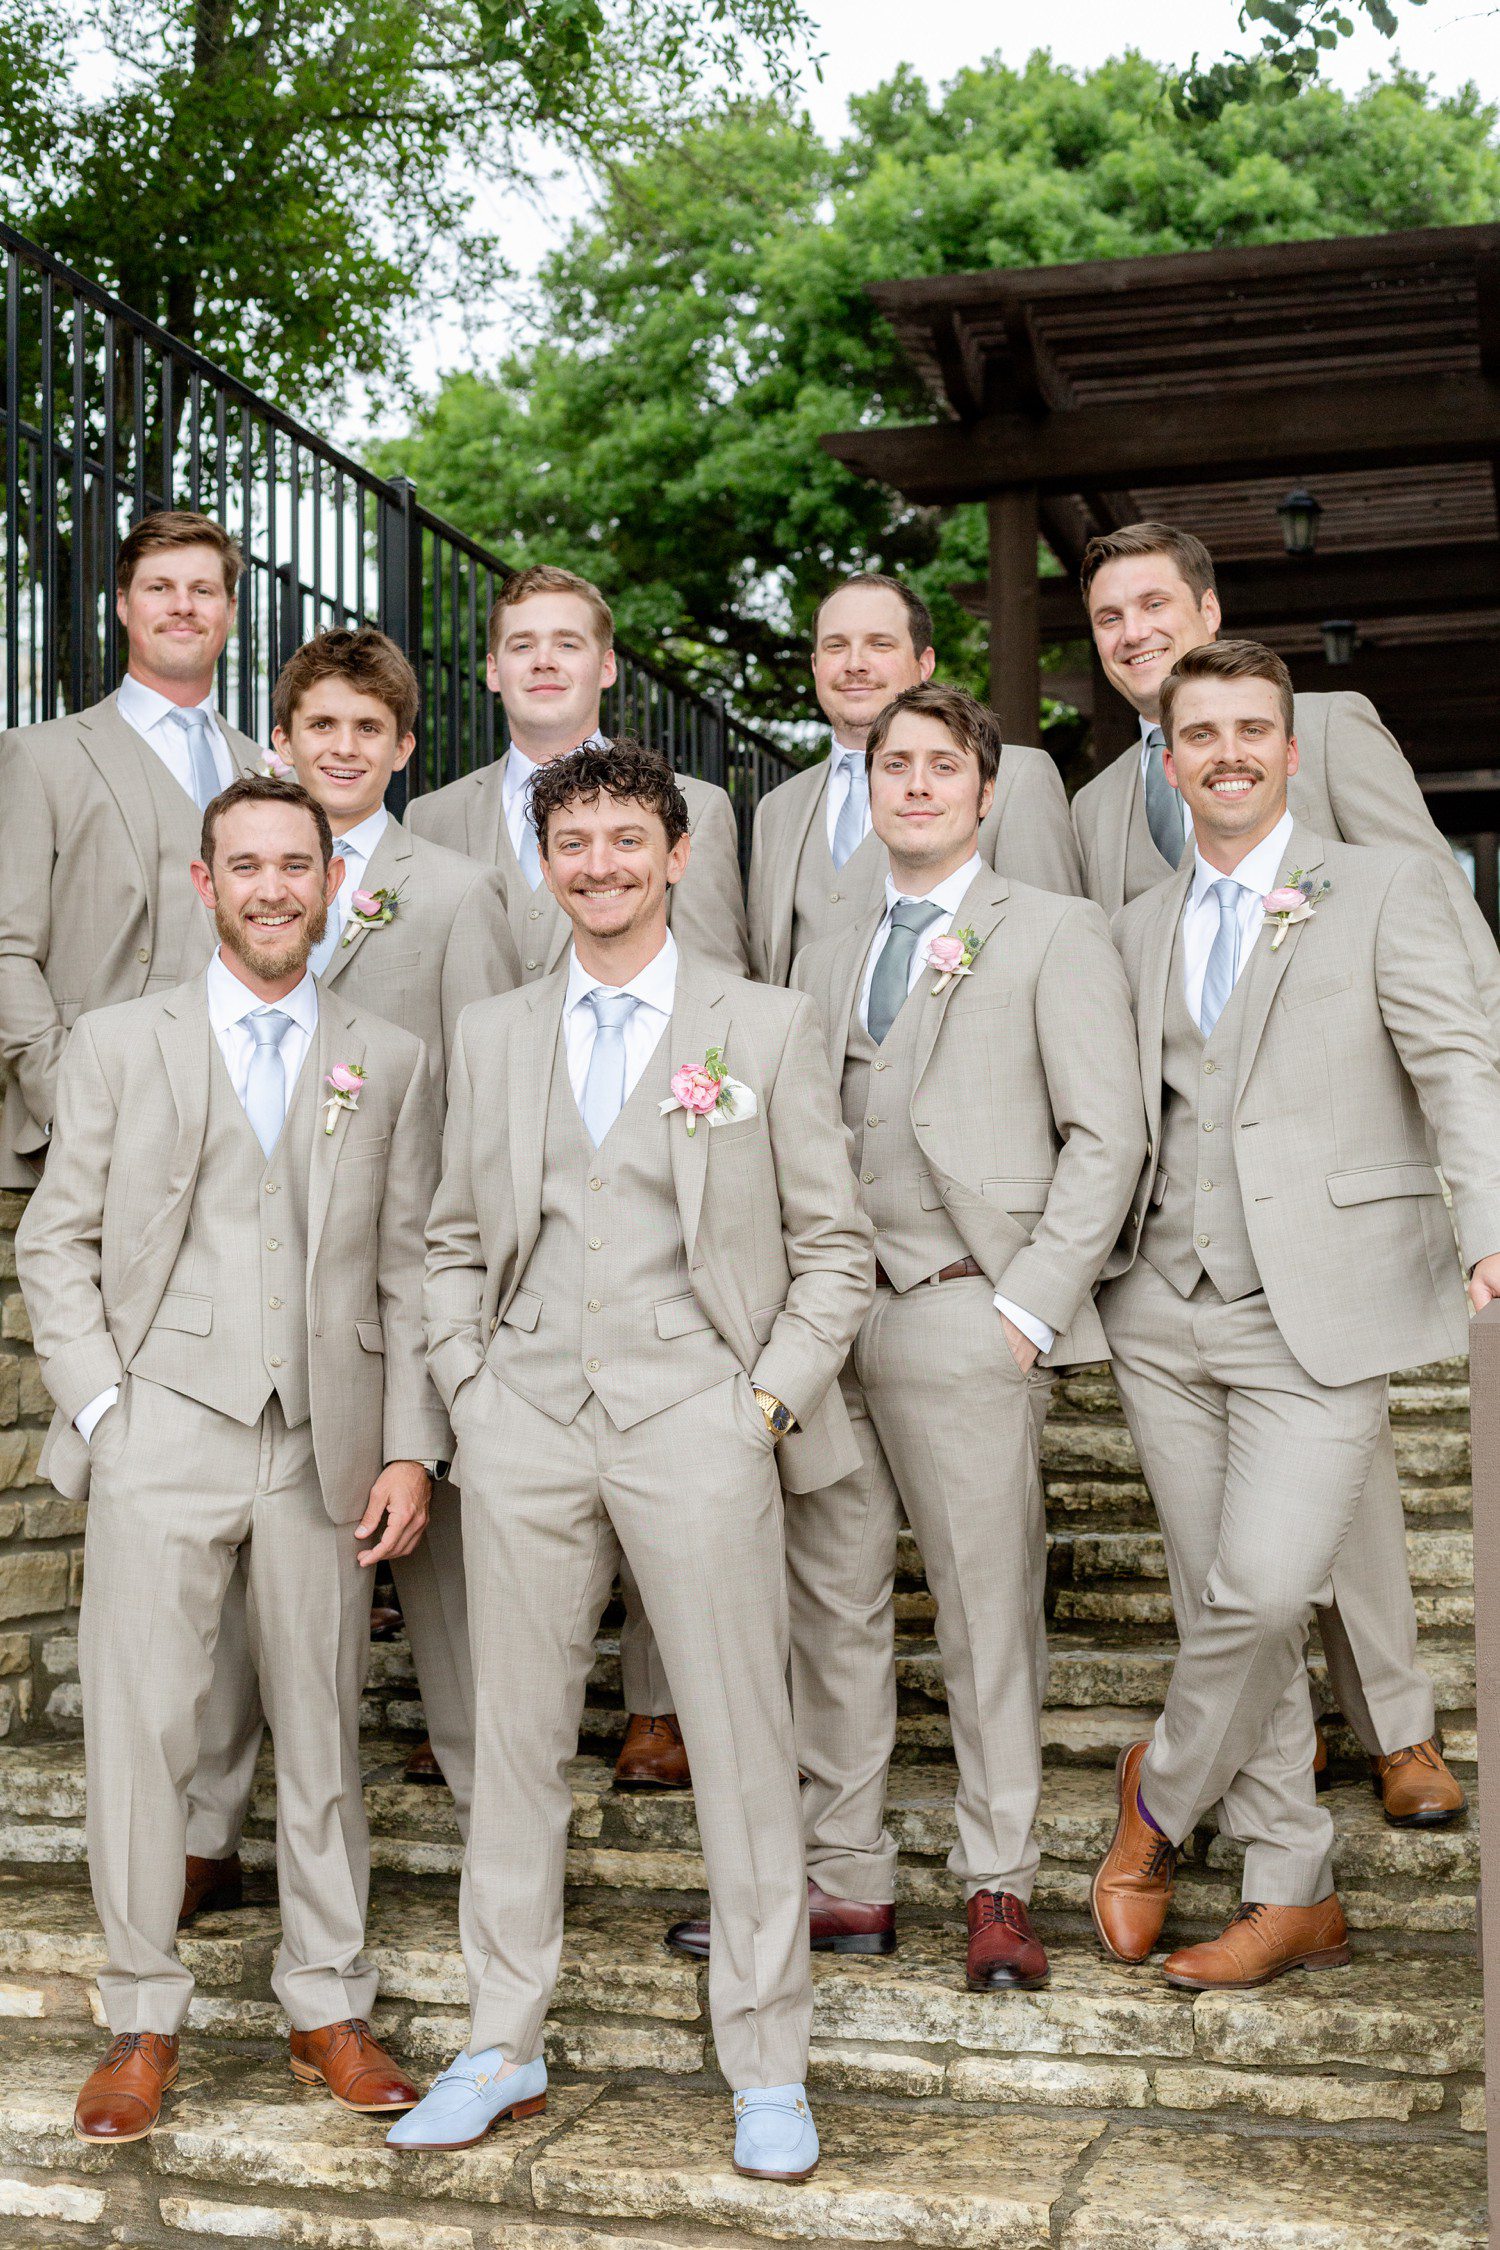 Groom and groomsmen photos at Sendera Springs.